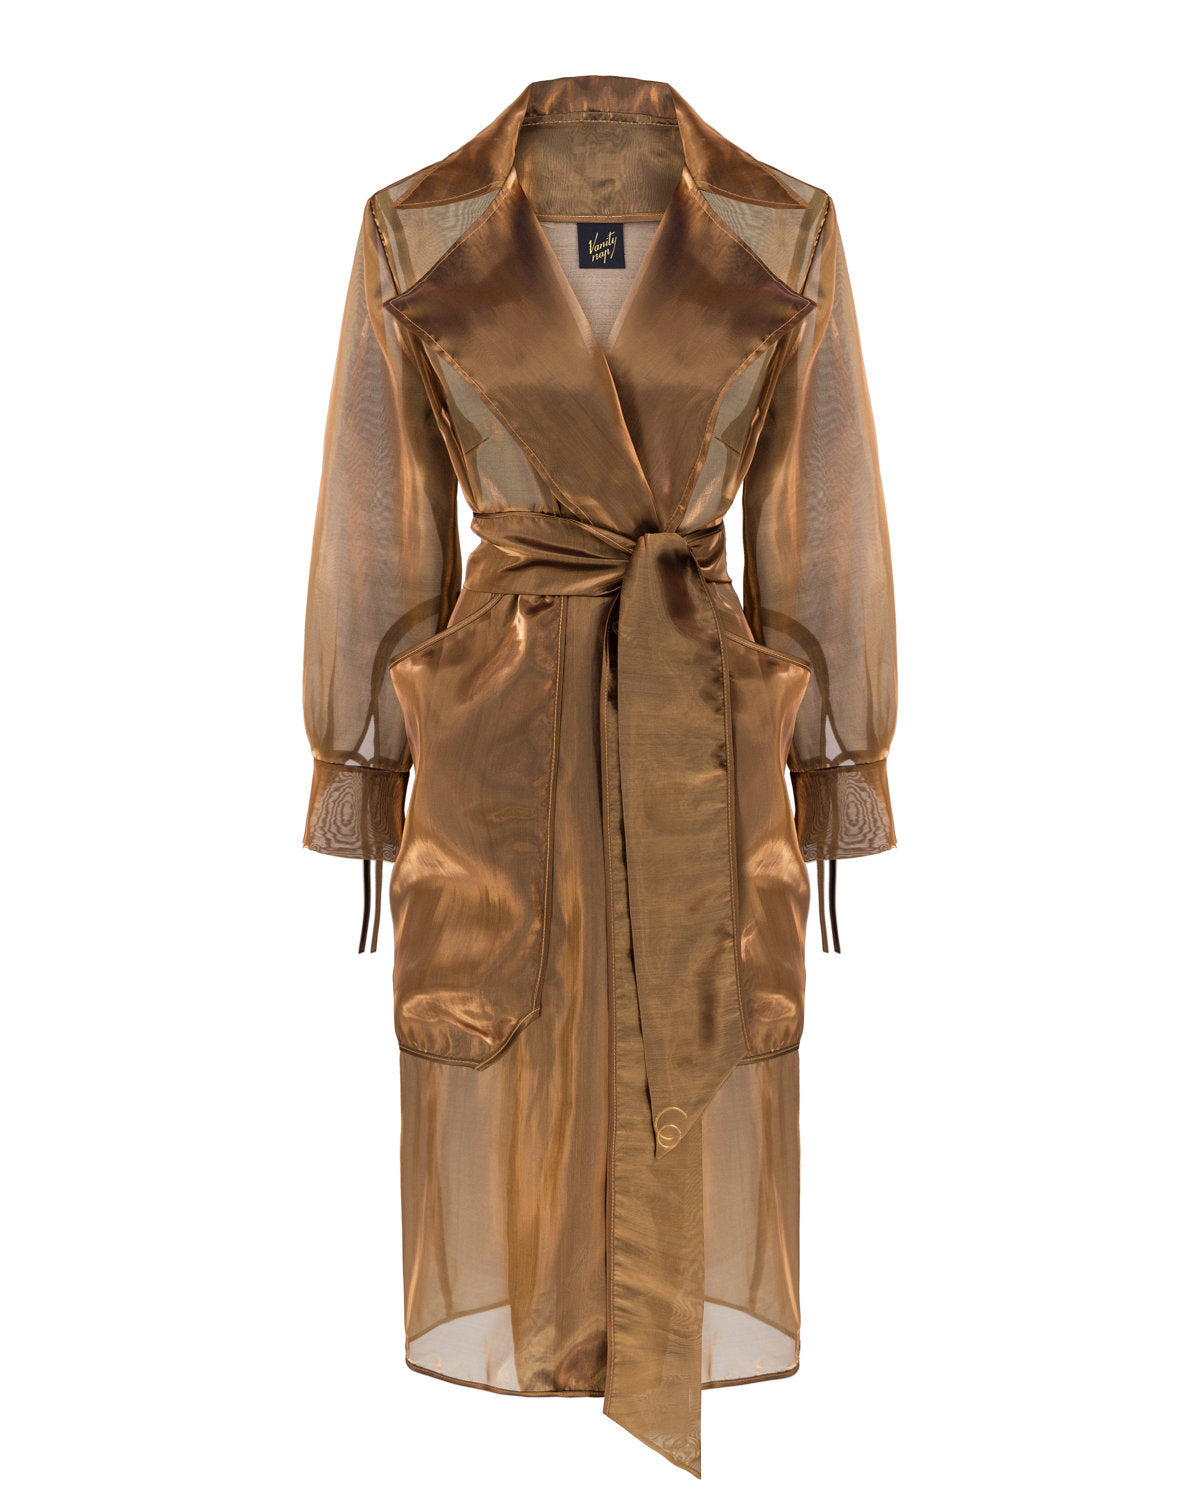 Copper organza coat